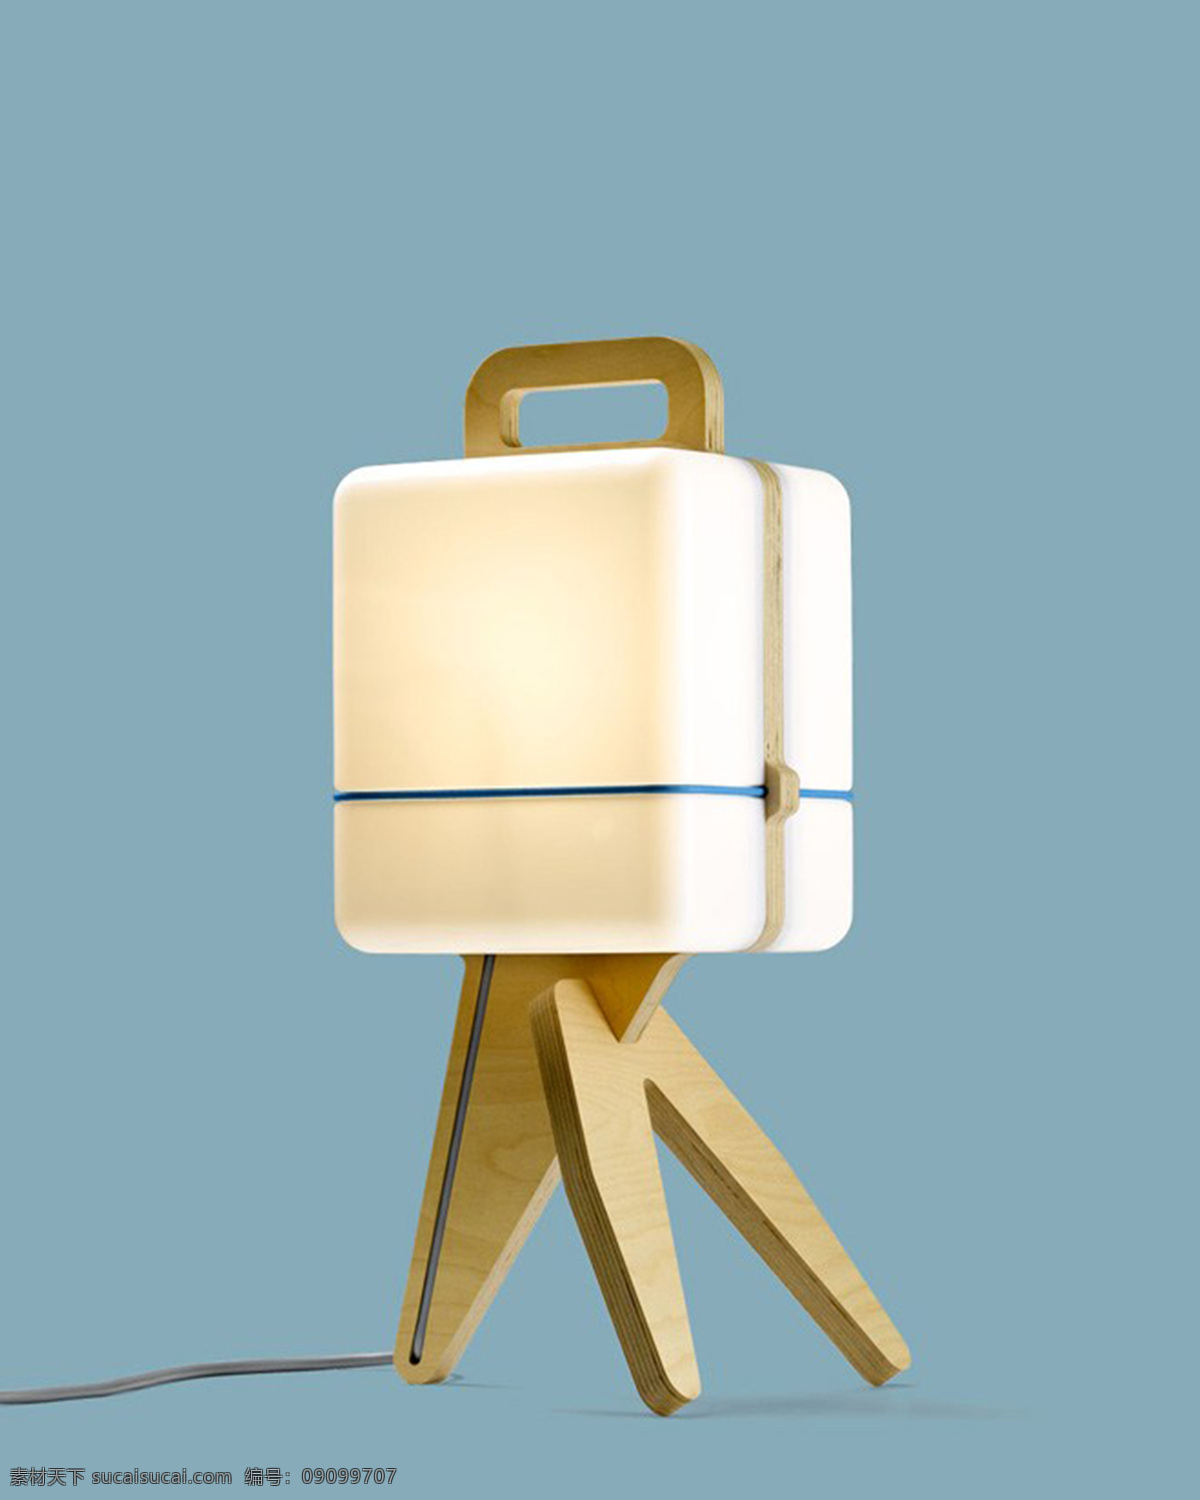 三角架 小人 台灯 产品设计 创意 工业设计 家居 生活 桌子